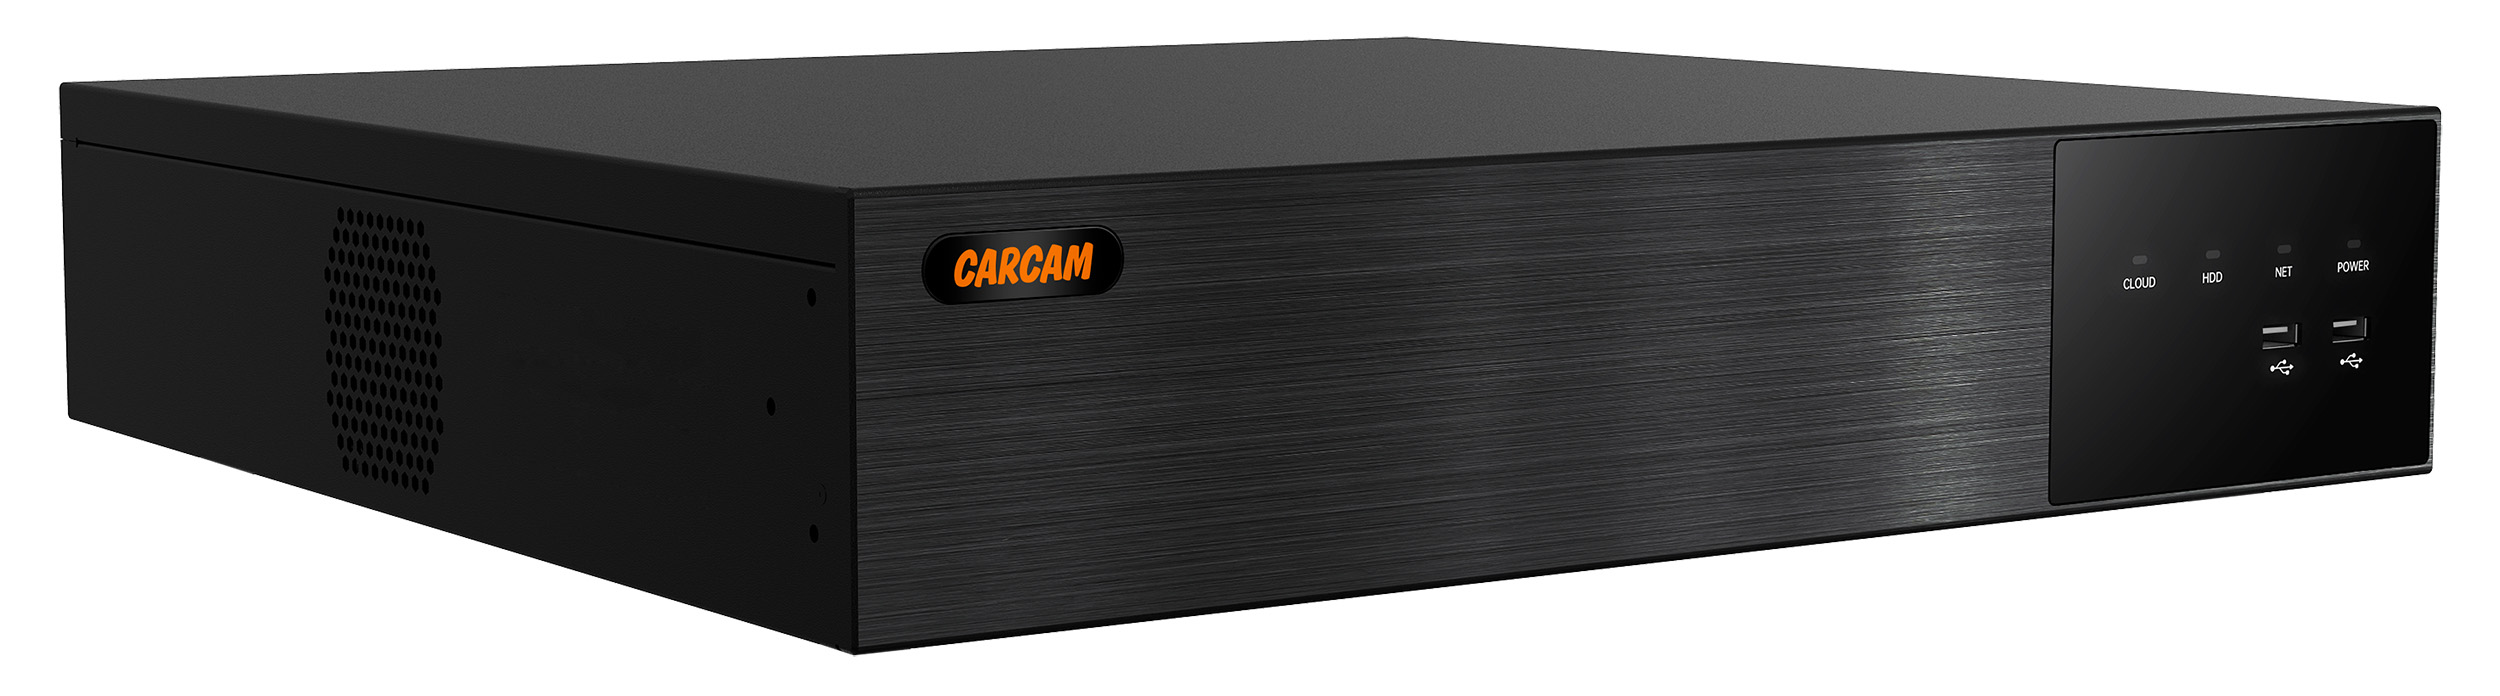 64-канальный IP-видеорегистратор CARCAM 64CH NVR 8764 64 канальный ip видеорегистратор carcam 64ch nvr 8764